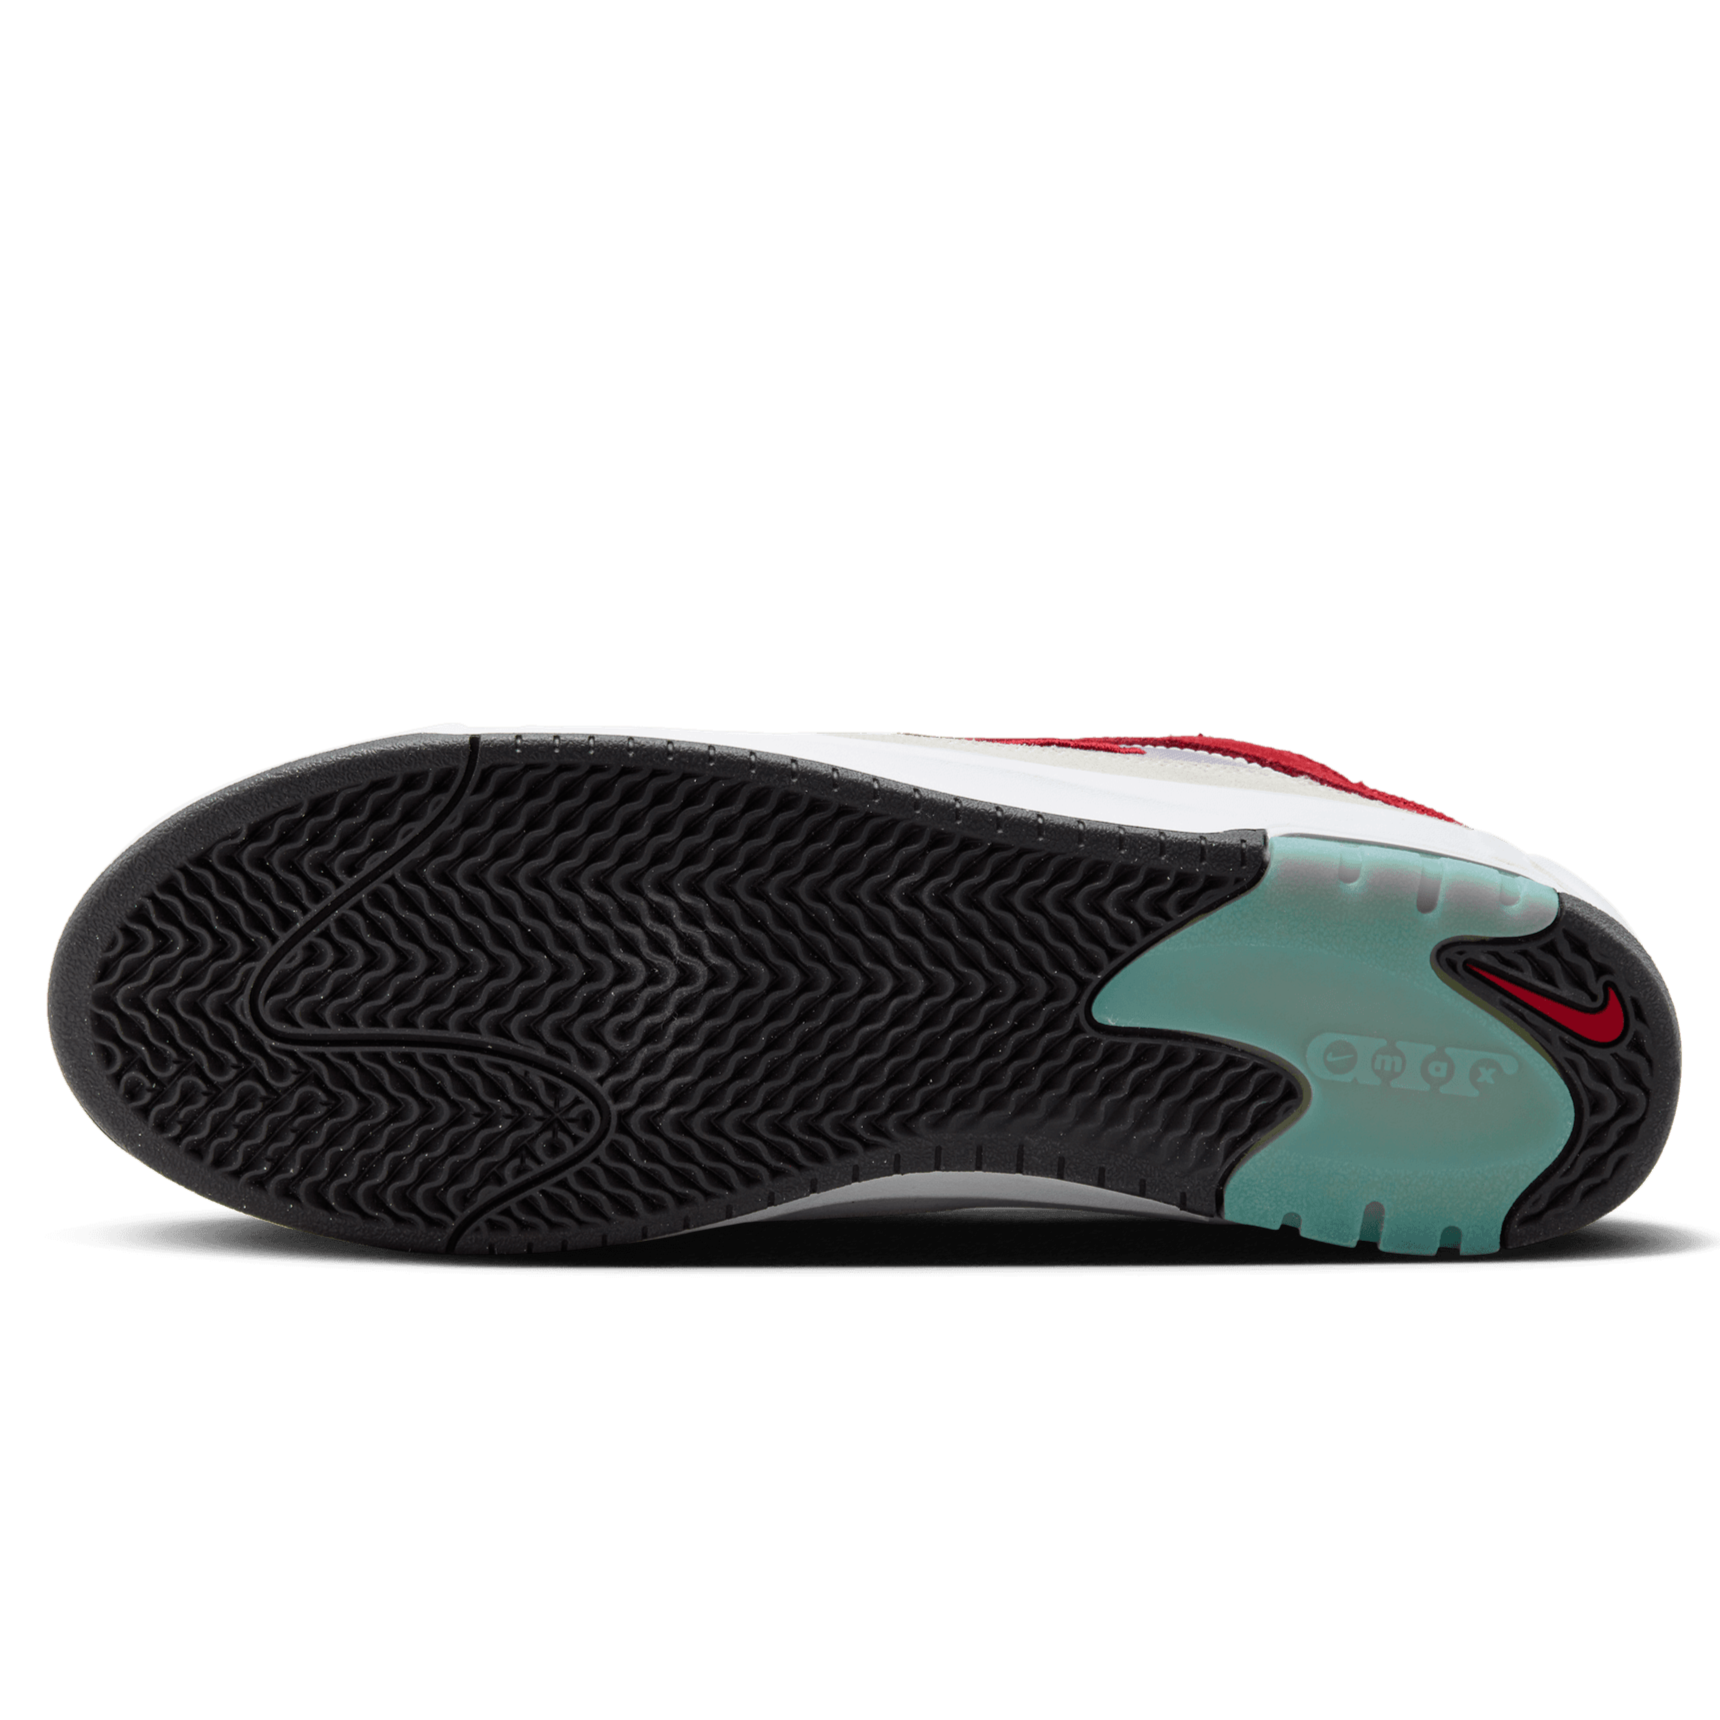 White/Varsity Red Air Max Ishod Wair Nike SB Skate Shoe Bottom